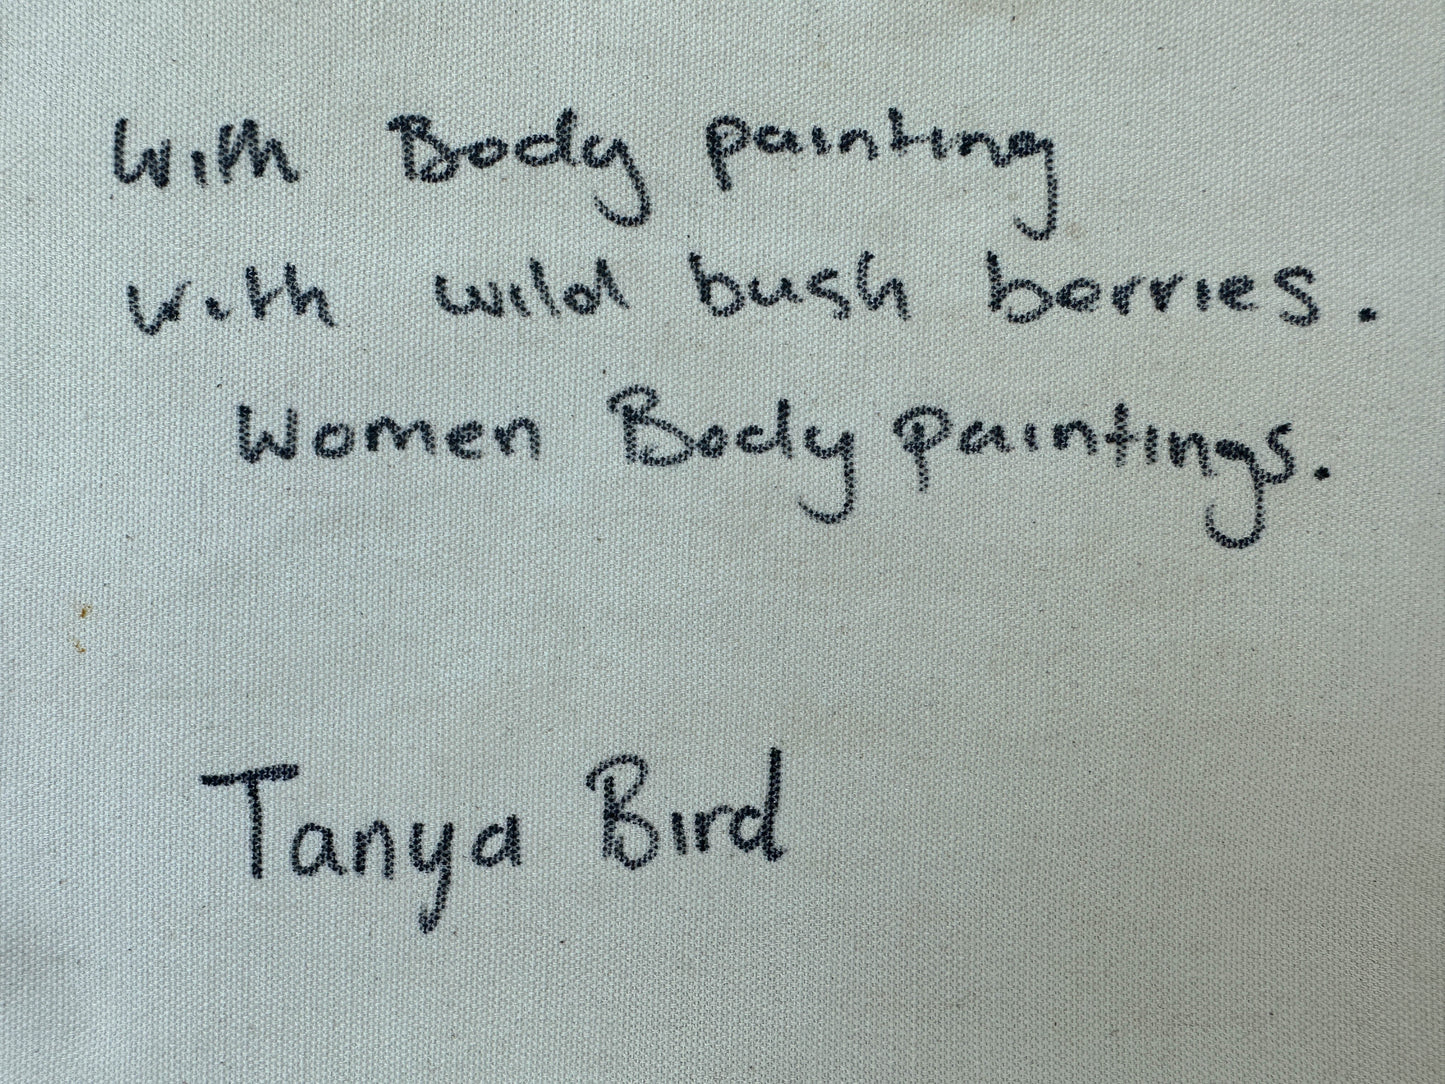 TANIA BIRD MPETYANE - Women's Body Painting & Wild Bush Berries